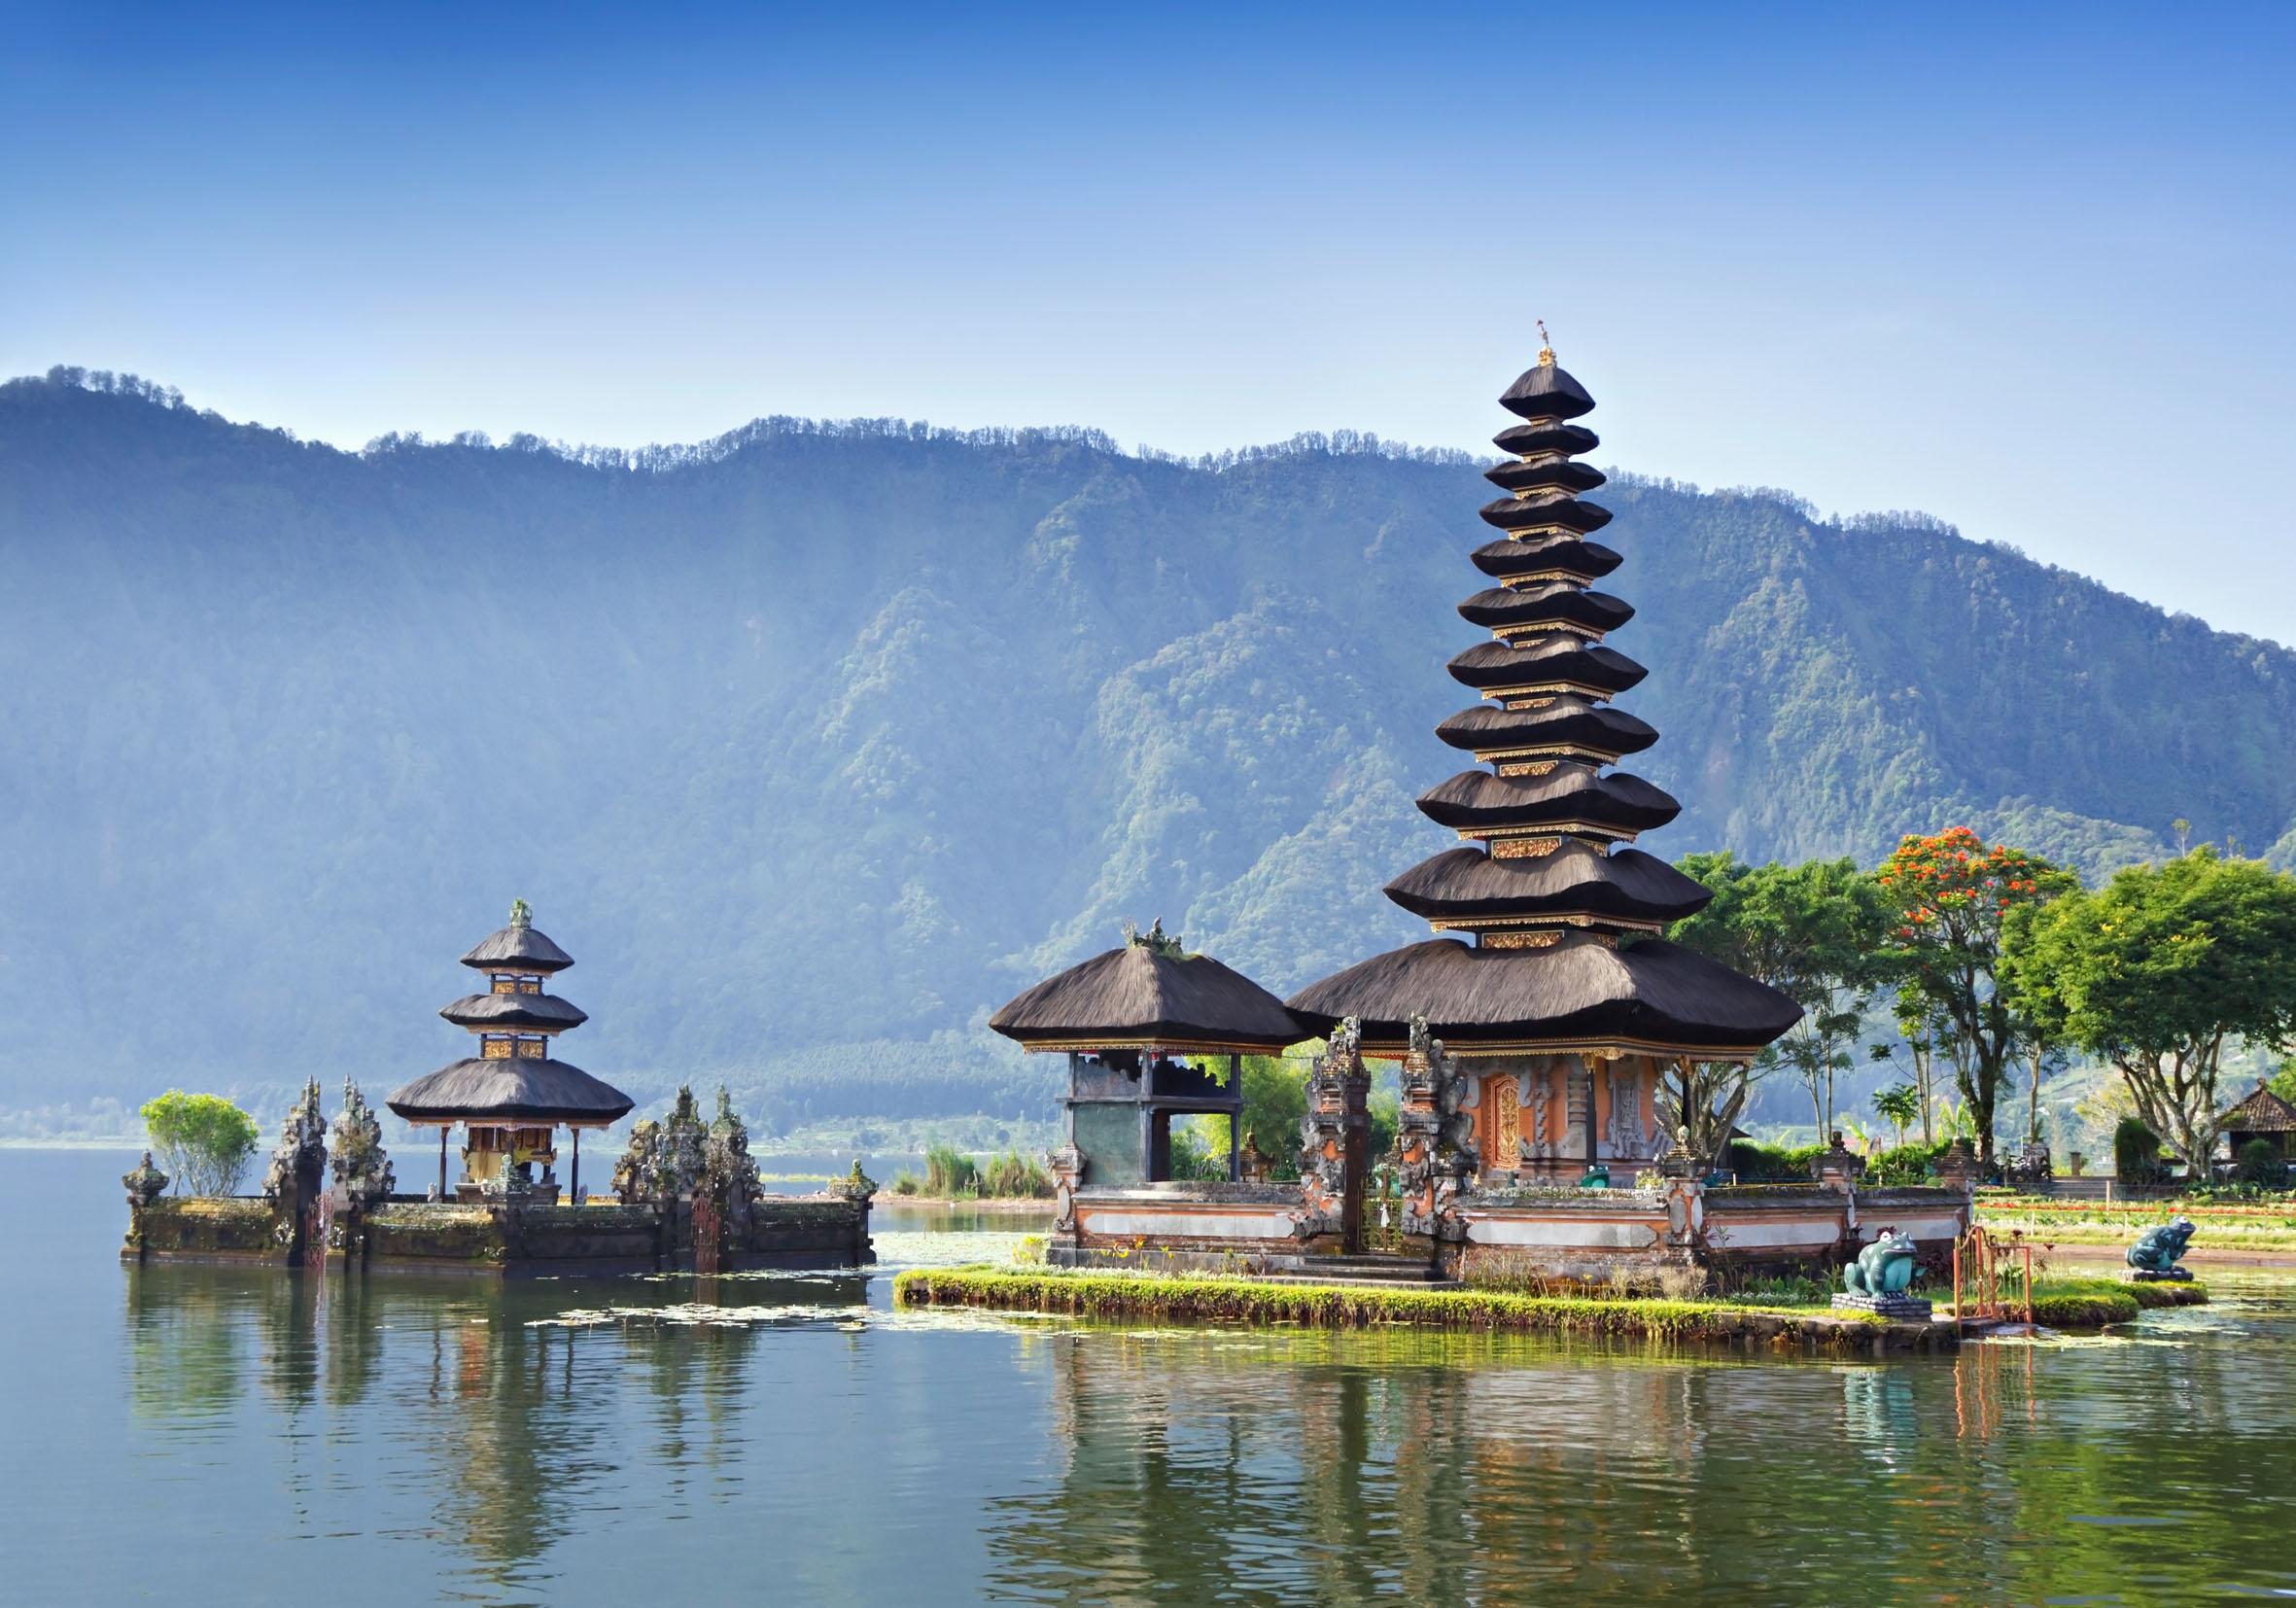 بالی (Bali)